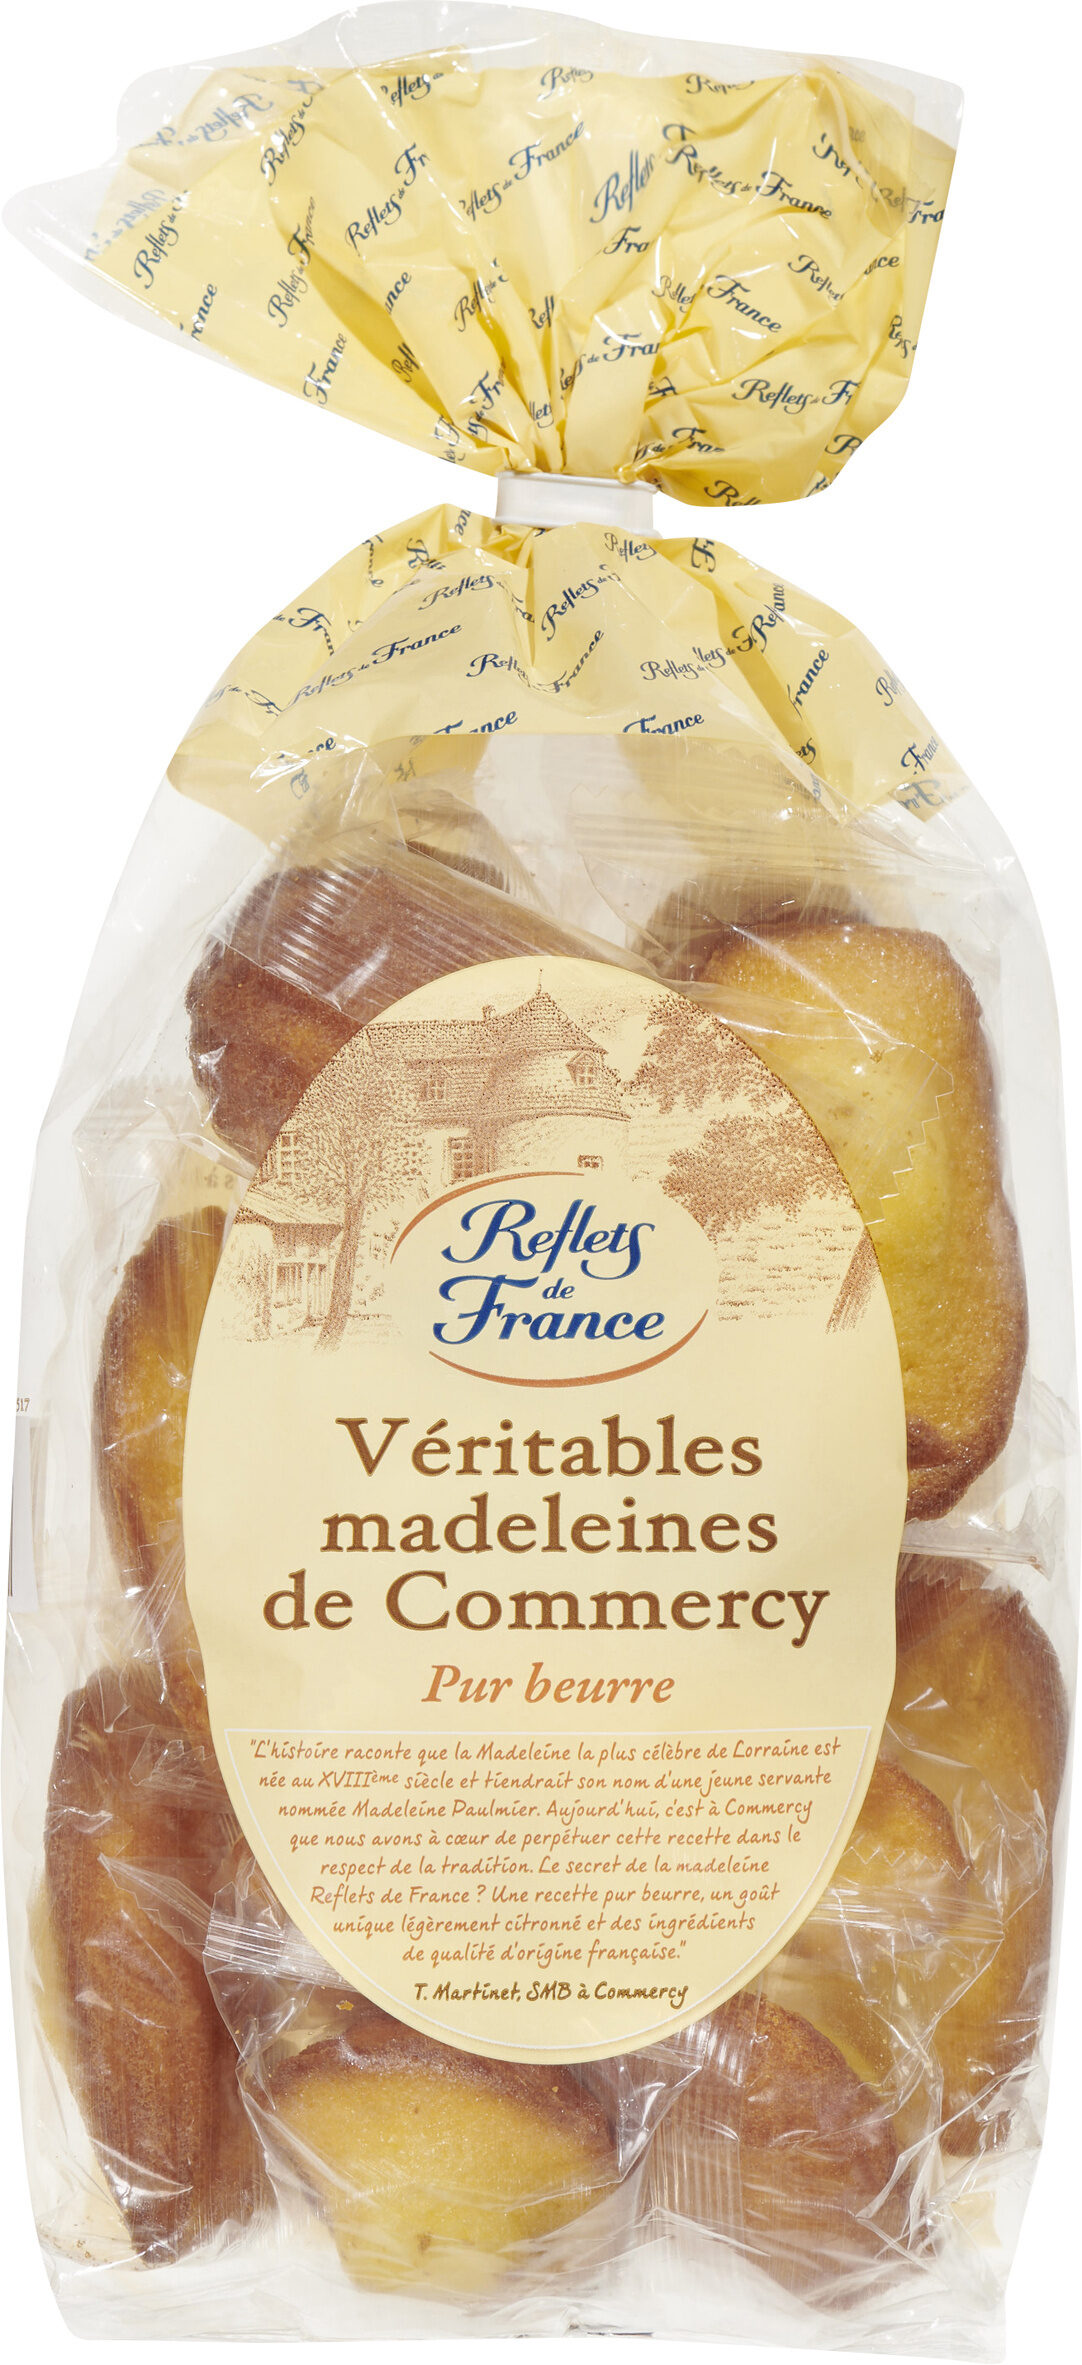 Véritables madeleines de Commercy pur beurre - Product - fr